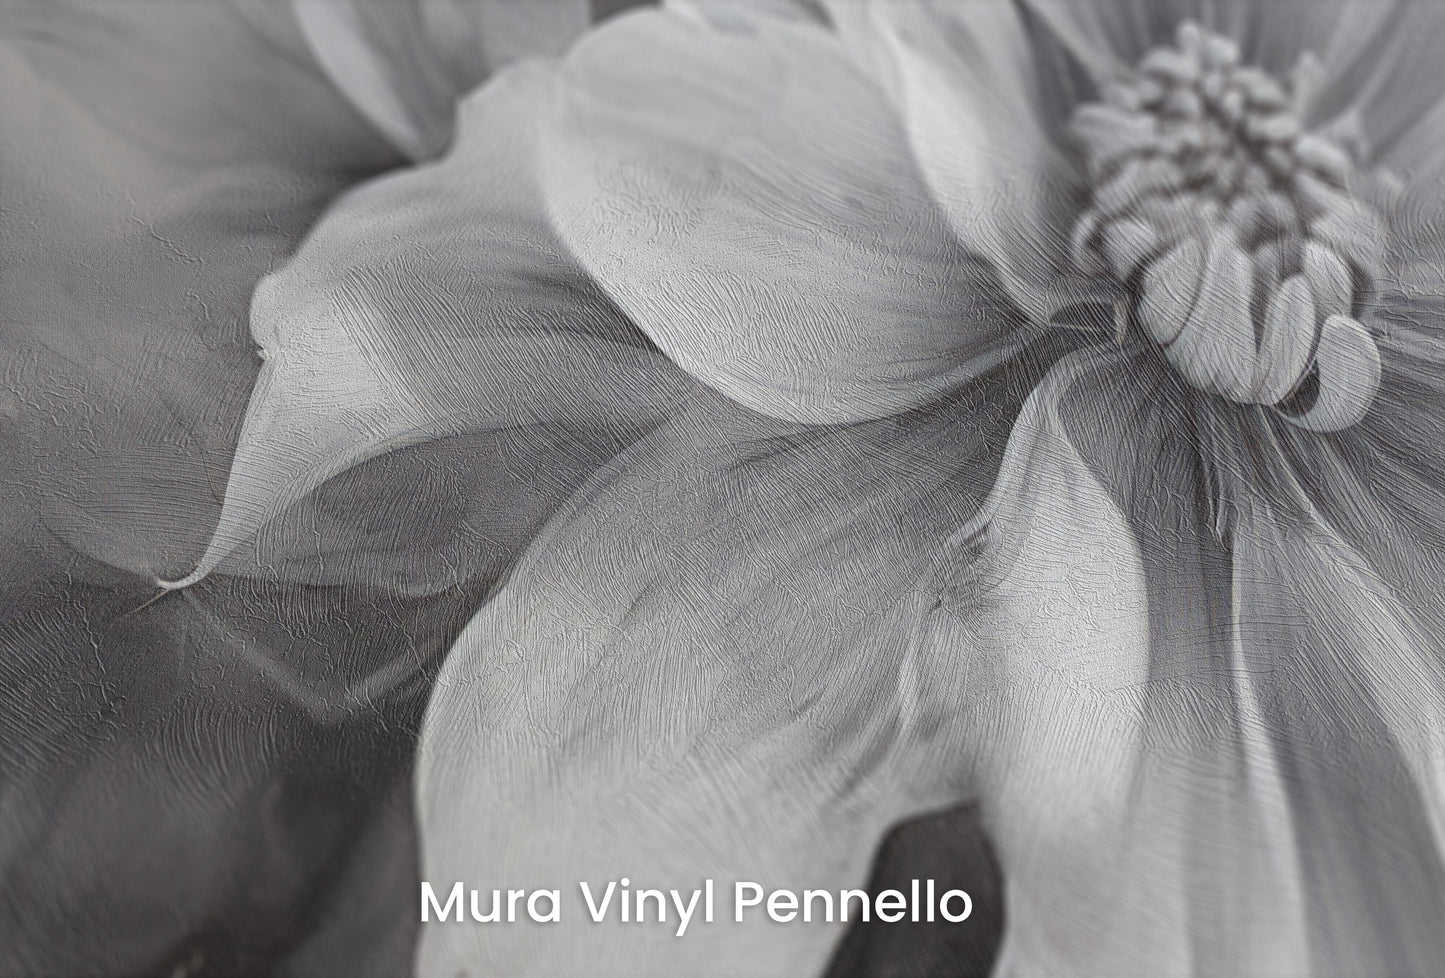 Zbliżenie na artystyczną fototapetę o nazwie NOIR FLORALE na podłożu Mura Vinyl Pennello - faktura pociągnięć pędzla malarskiego.